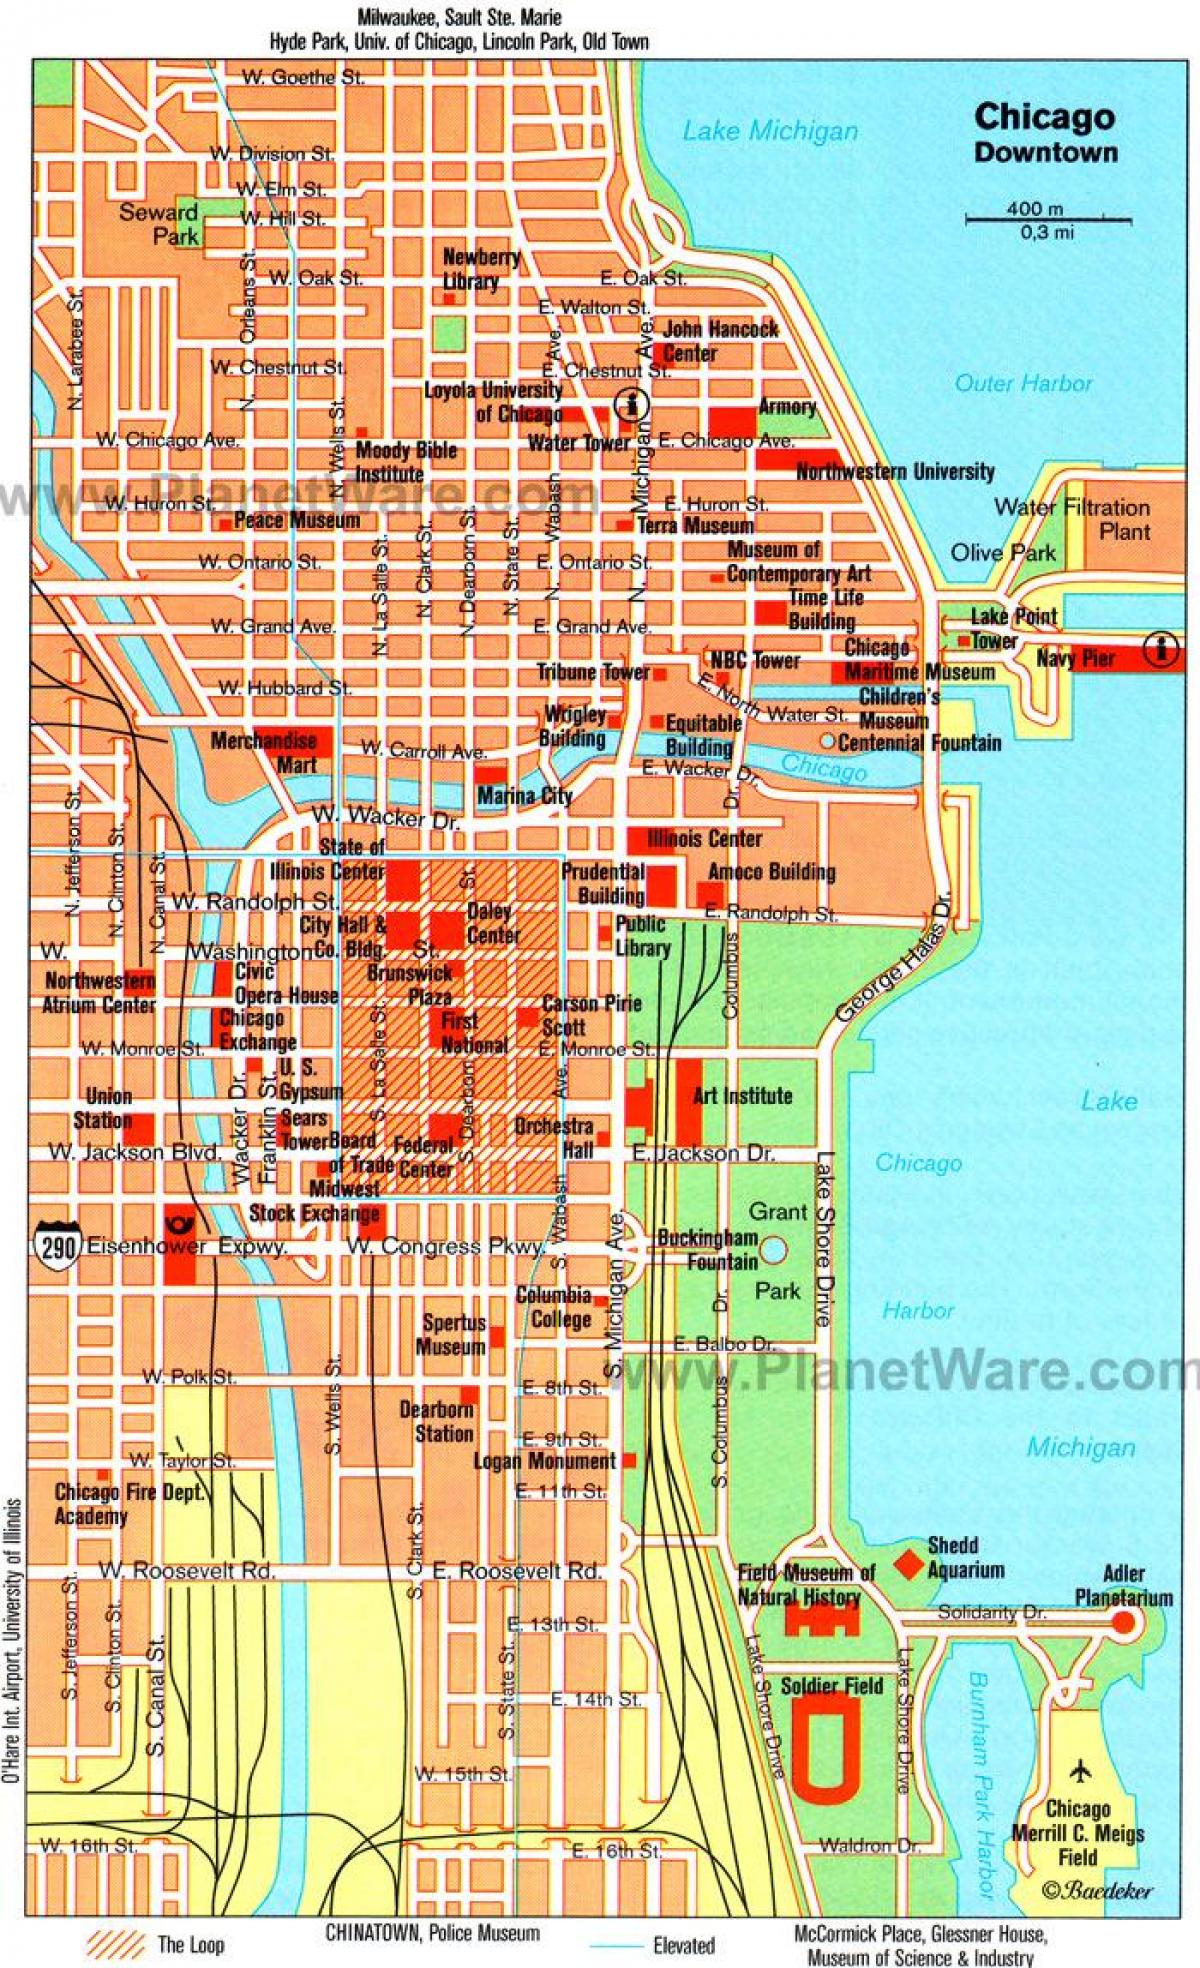 नक्शा शिकागो के आकर्षण